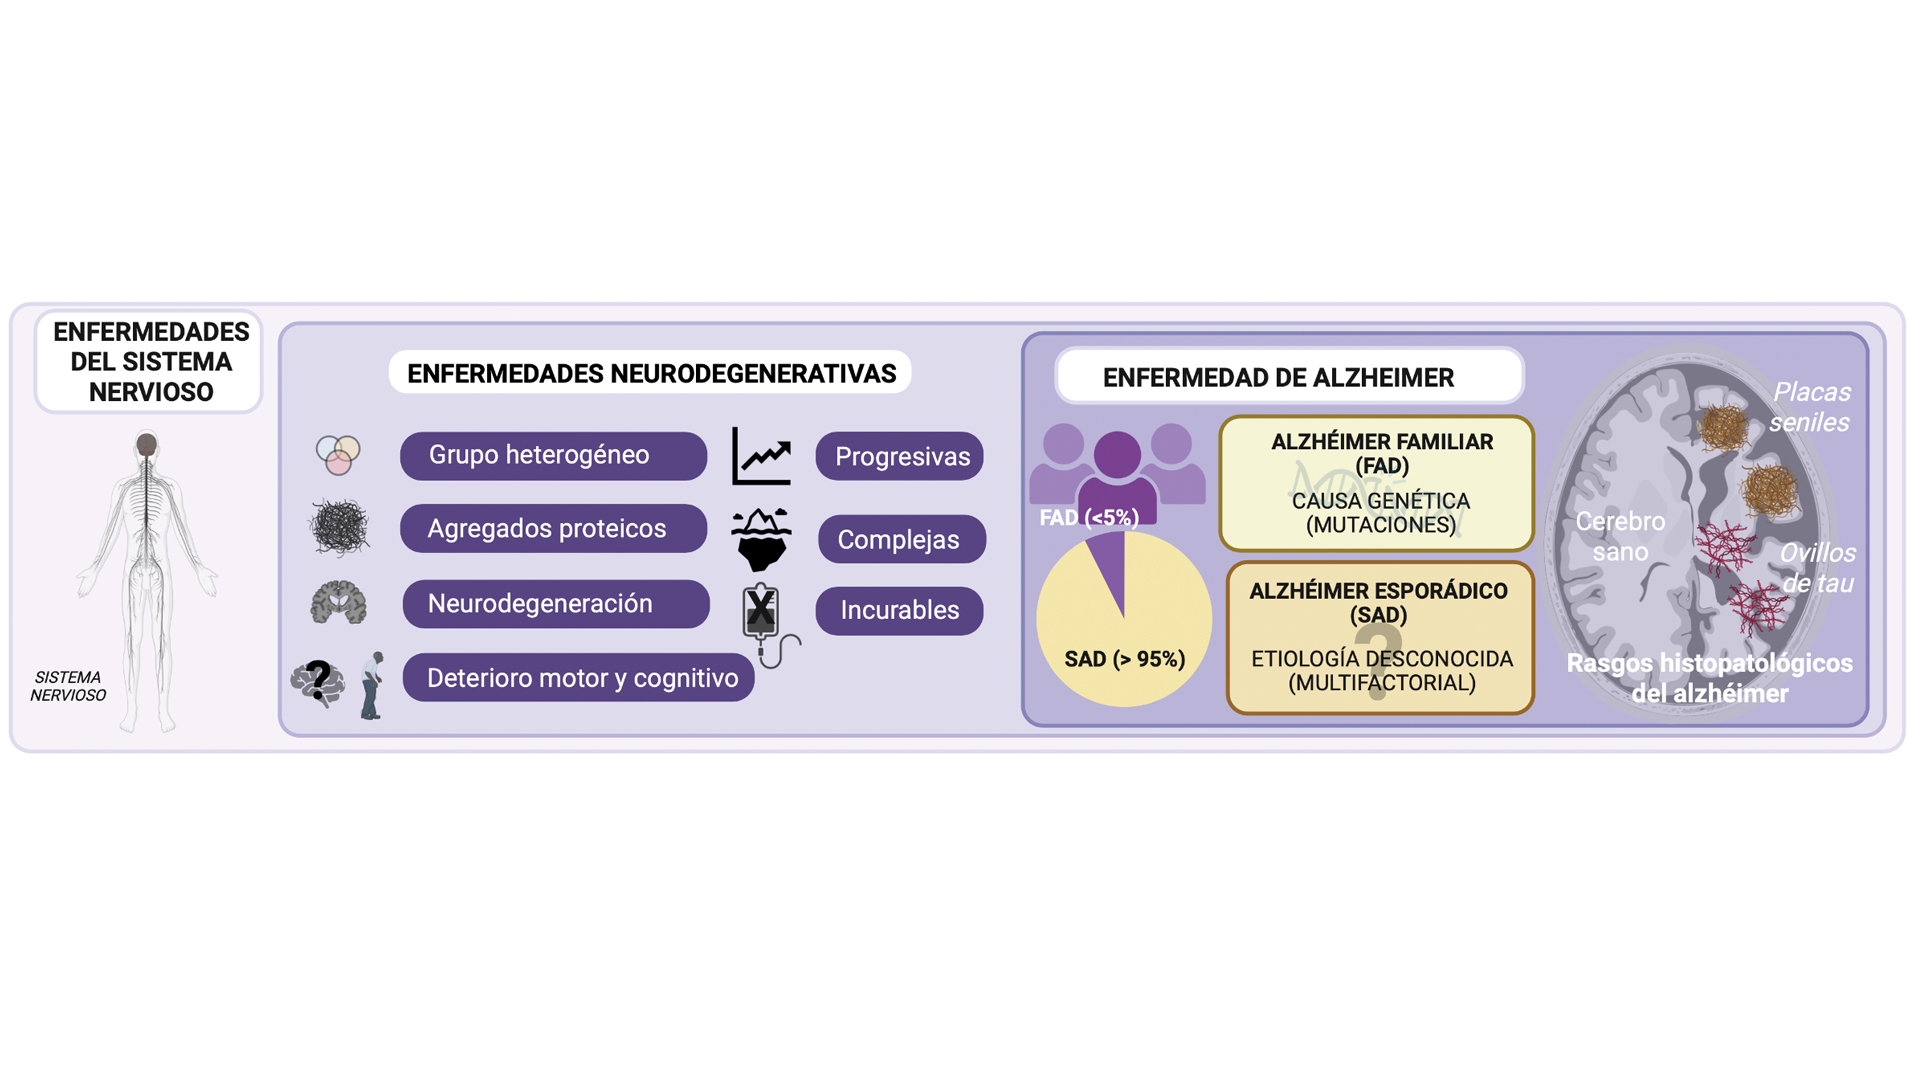 Diagrama con los aspectos generales sobre las enfermedades neurodegenerativas y la enfermedad de Alzheimer.